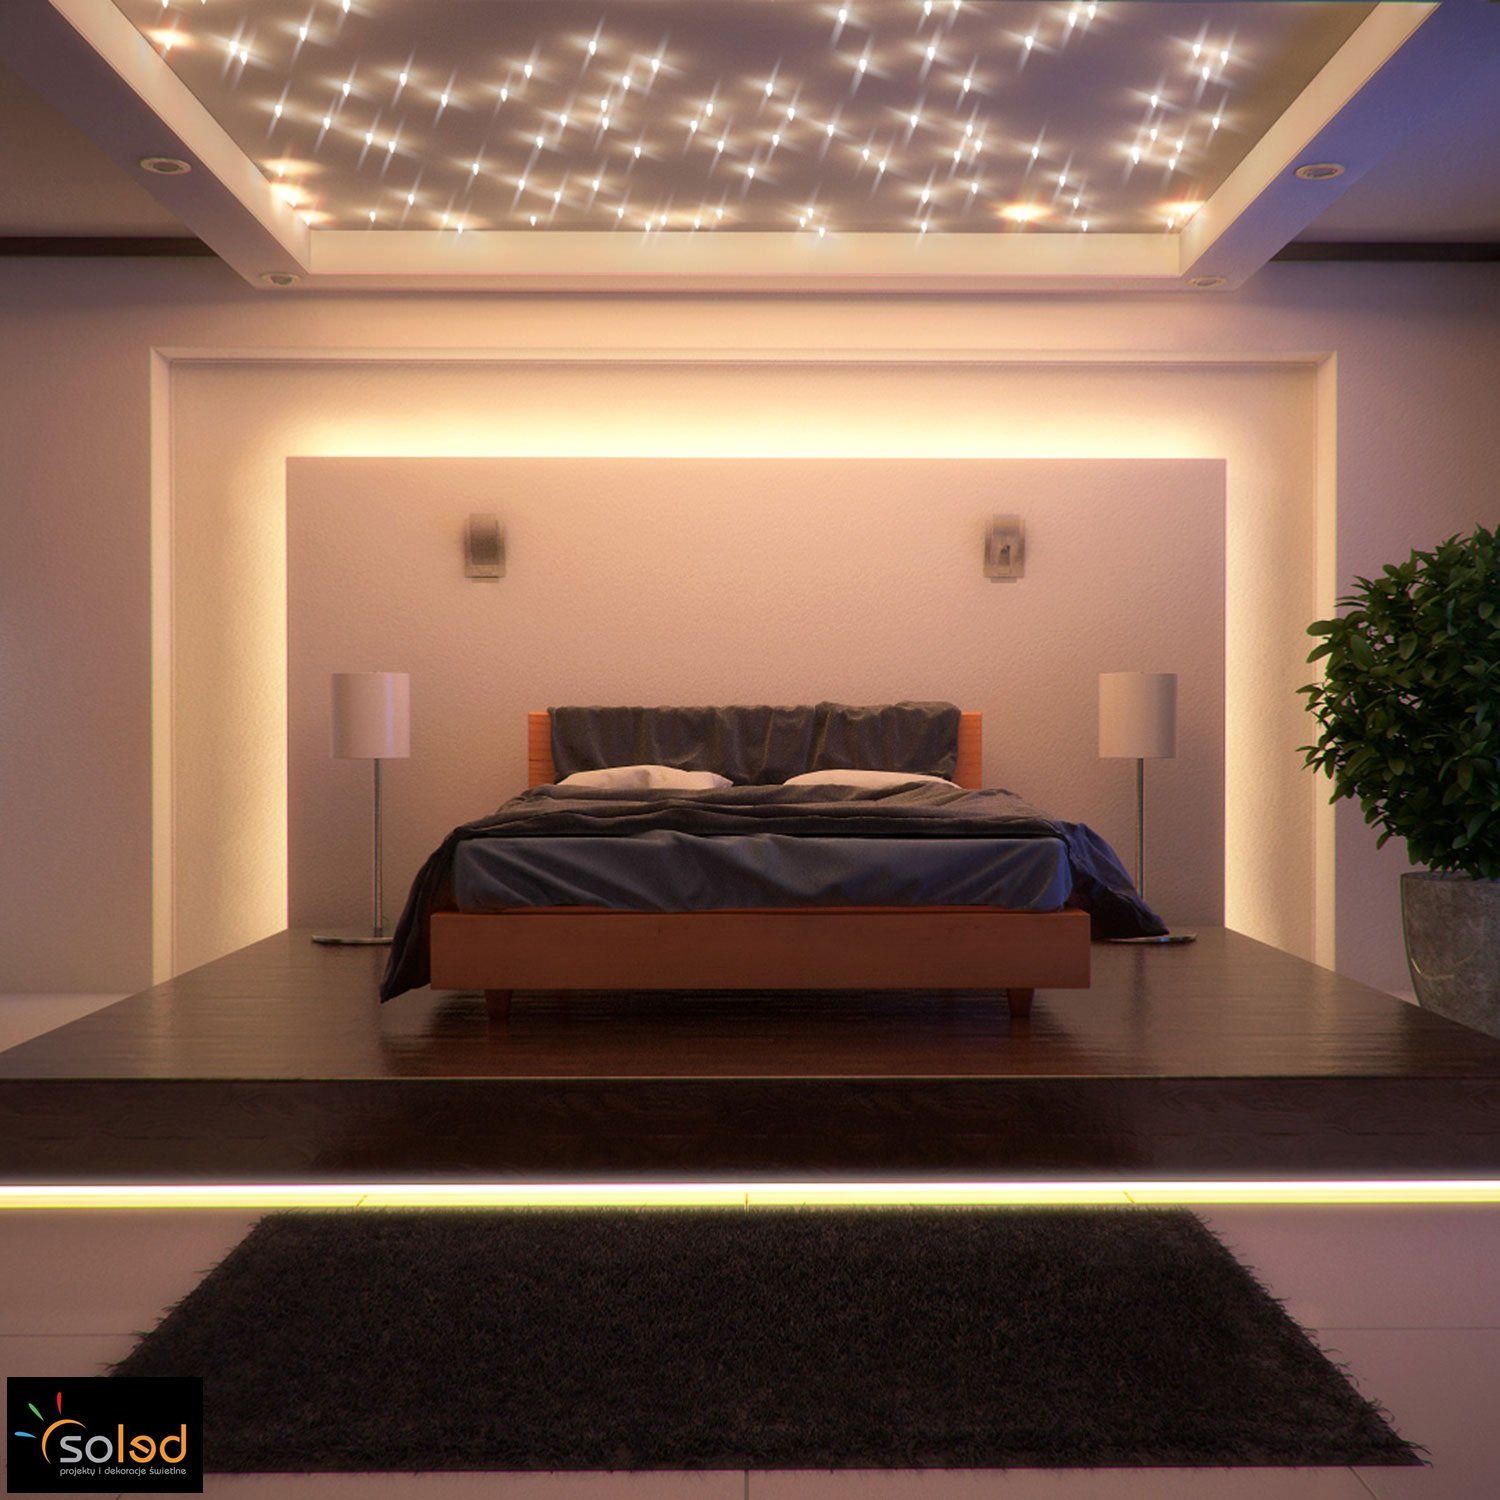 Подсветка внутри потолка. Потолок с подсветкой. Светодиоды на потолке. Комната с подсветкой. Кровать на подиуме с подсветкой.